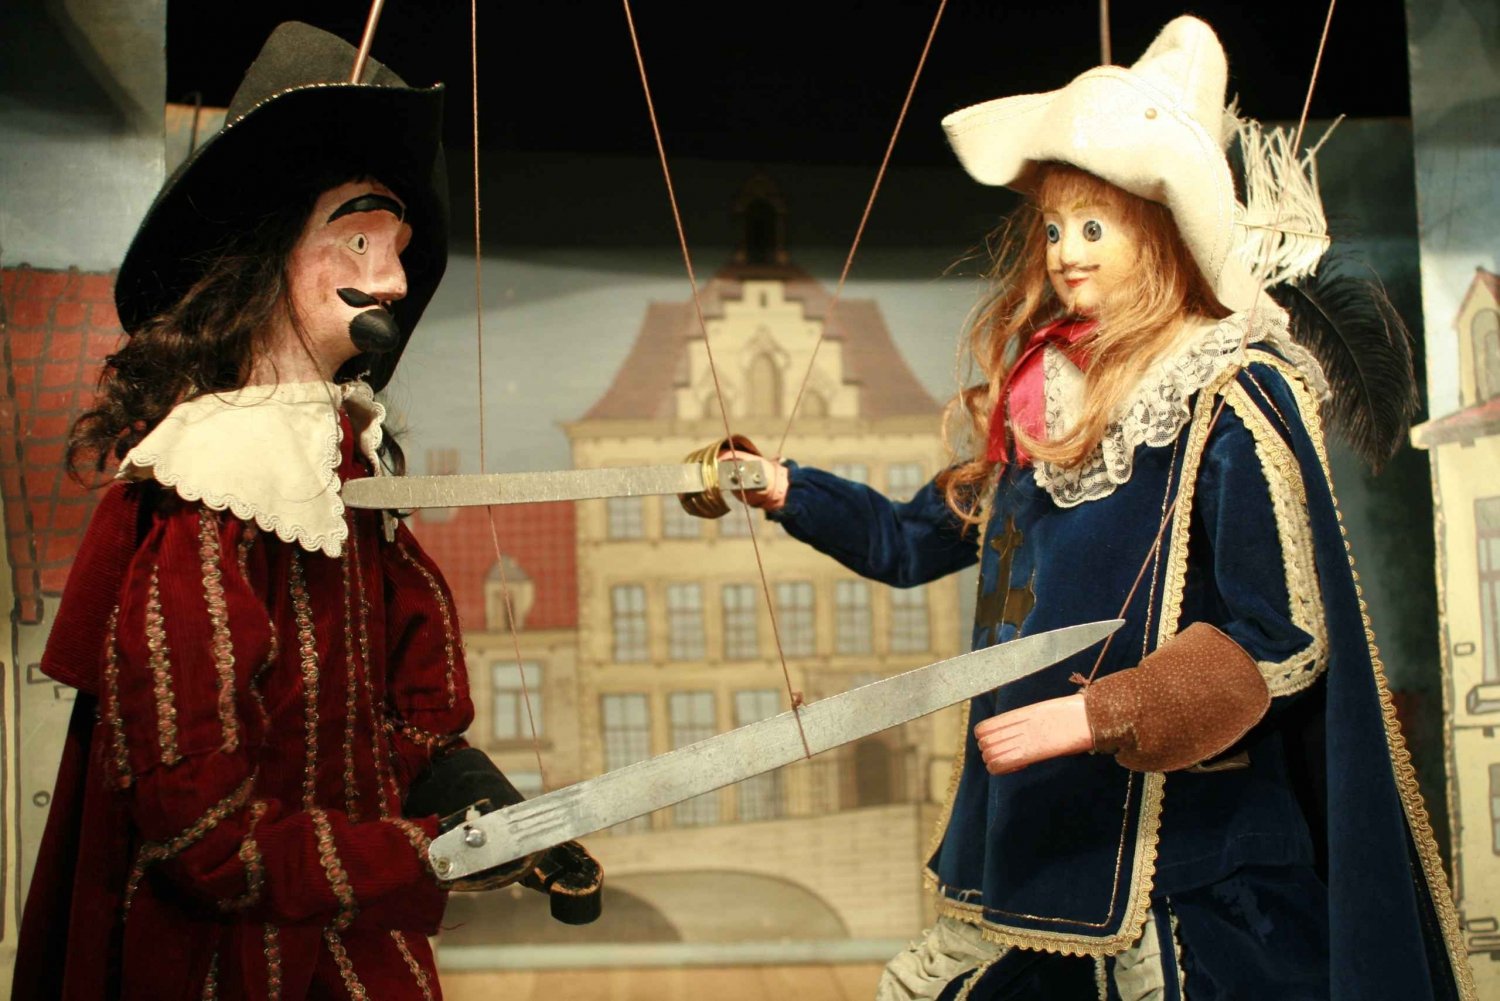 Bruxelas: Show particular de marionetes dos Três Mosqueteiros